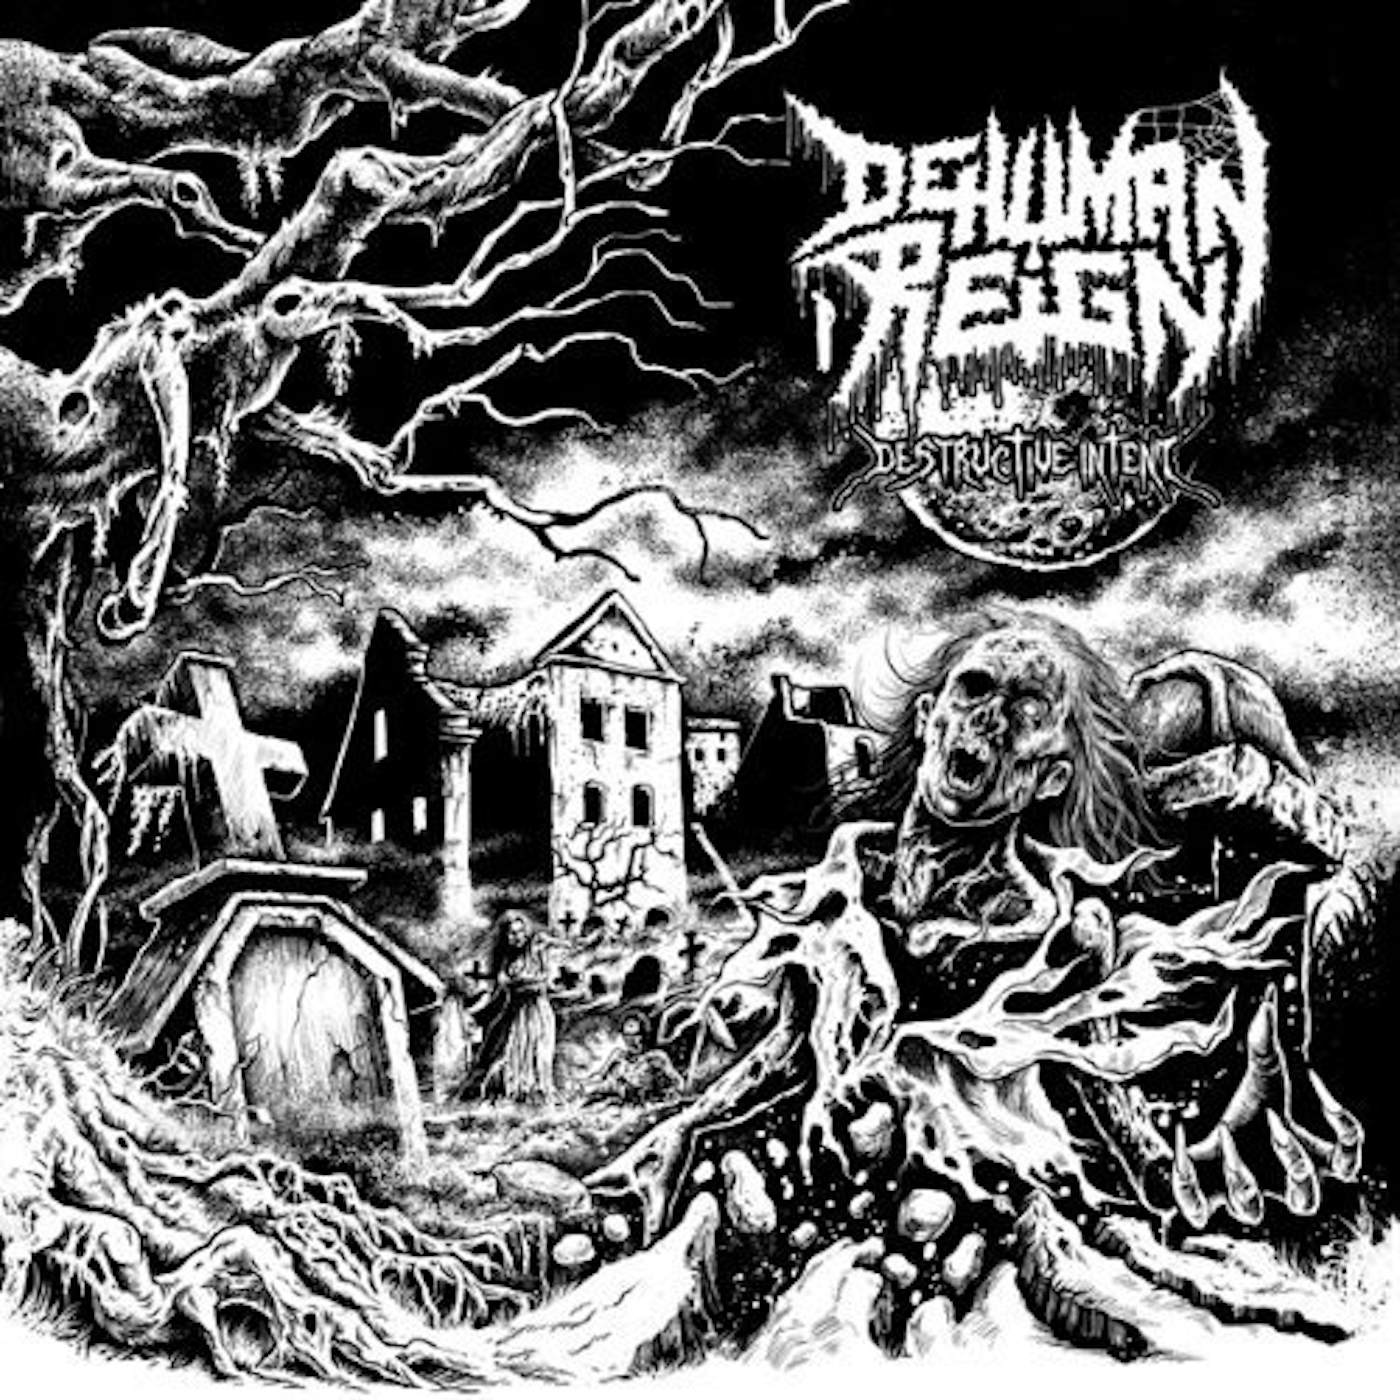 Dehuman Reign Destructive Intent Vinyl Record